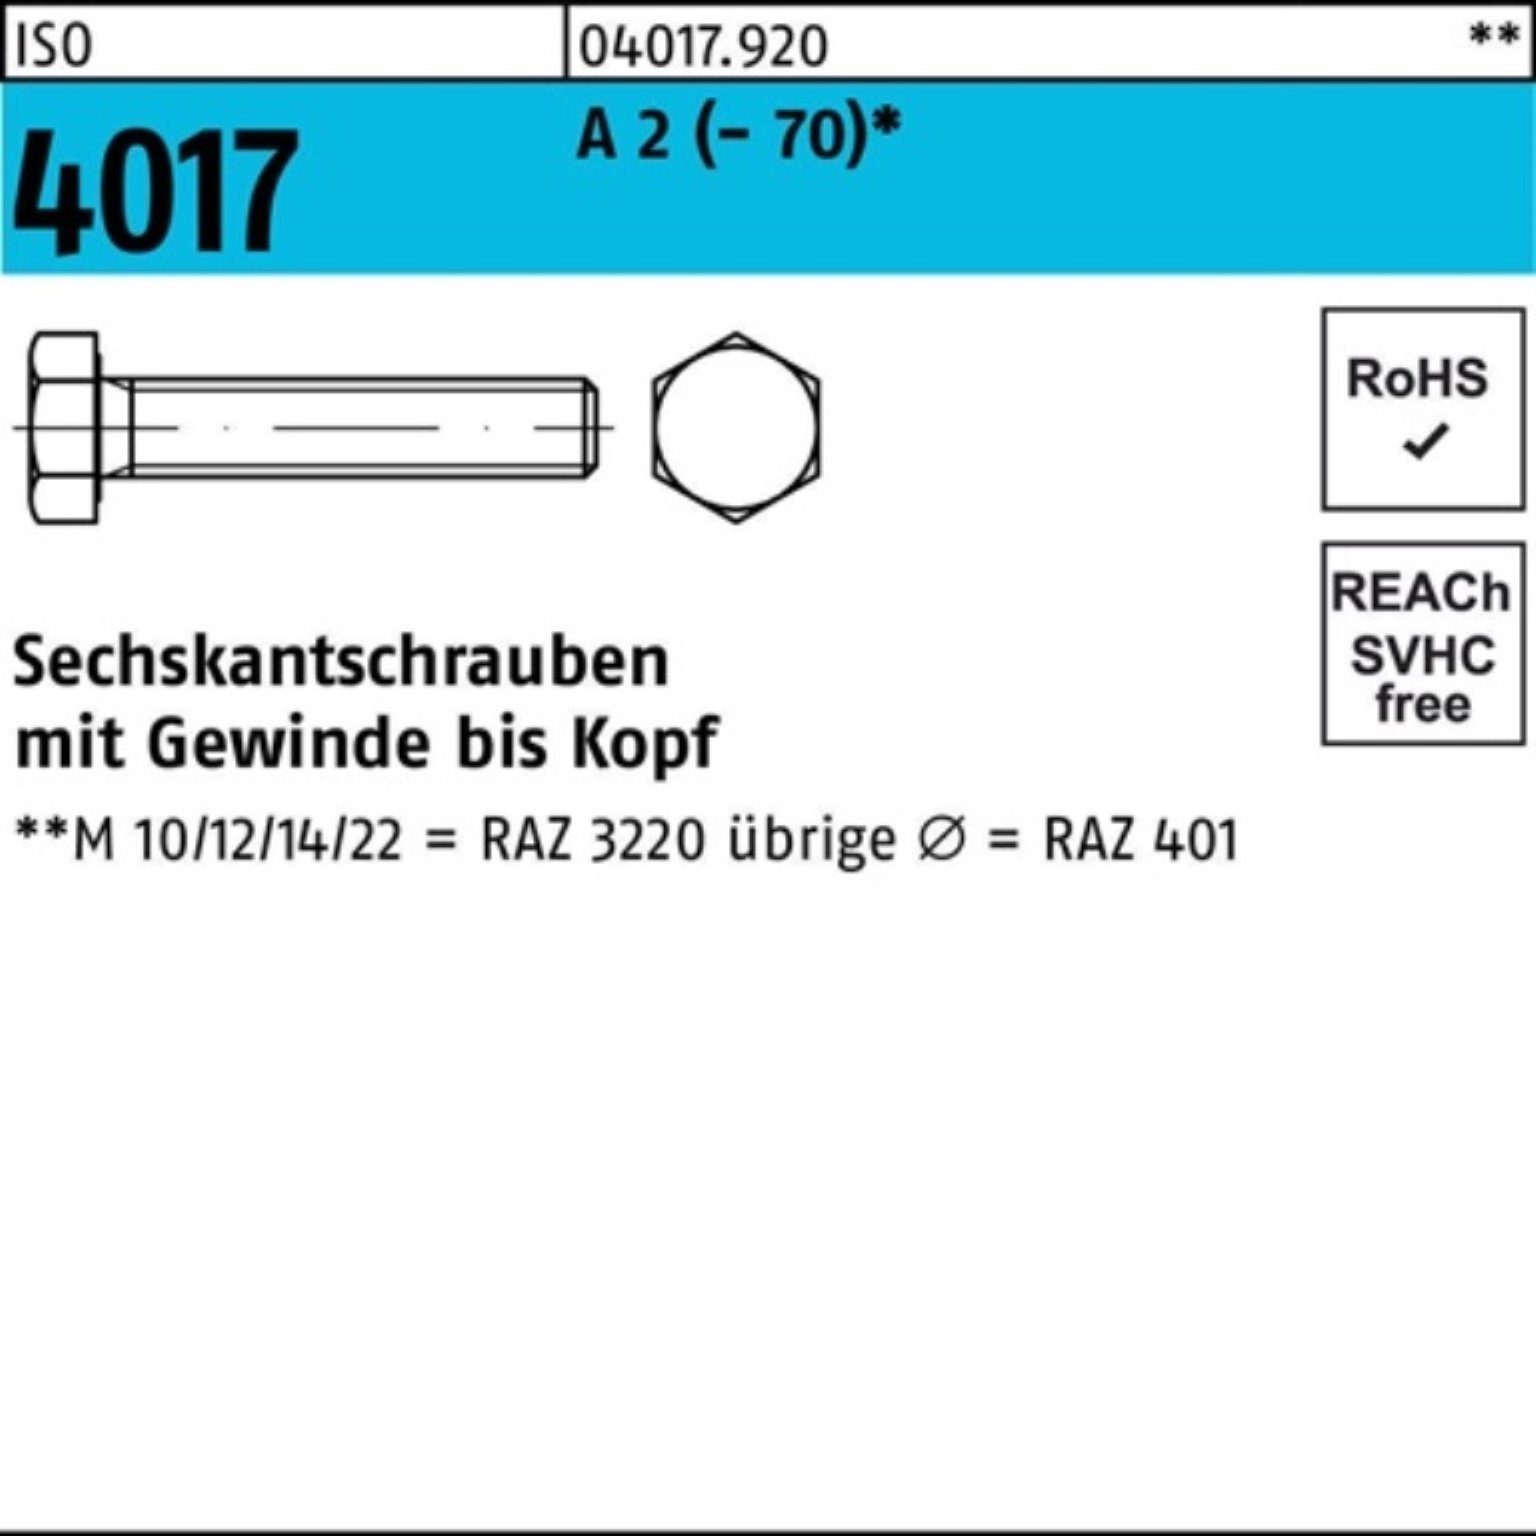 Bufab Sechskantschraube 100 2 4017 Stück ISO Sechskantschraube 110 (70) Pack A 100er M6x VG